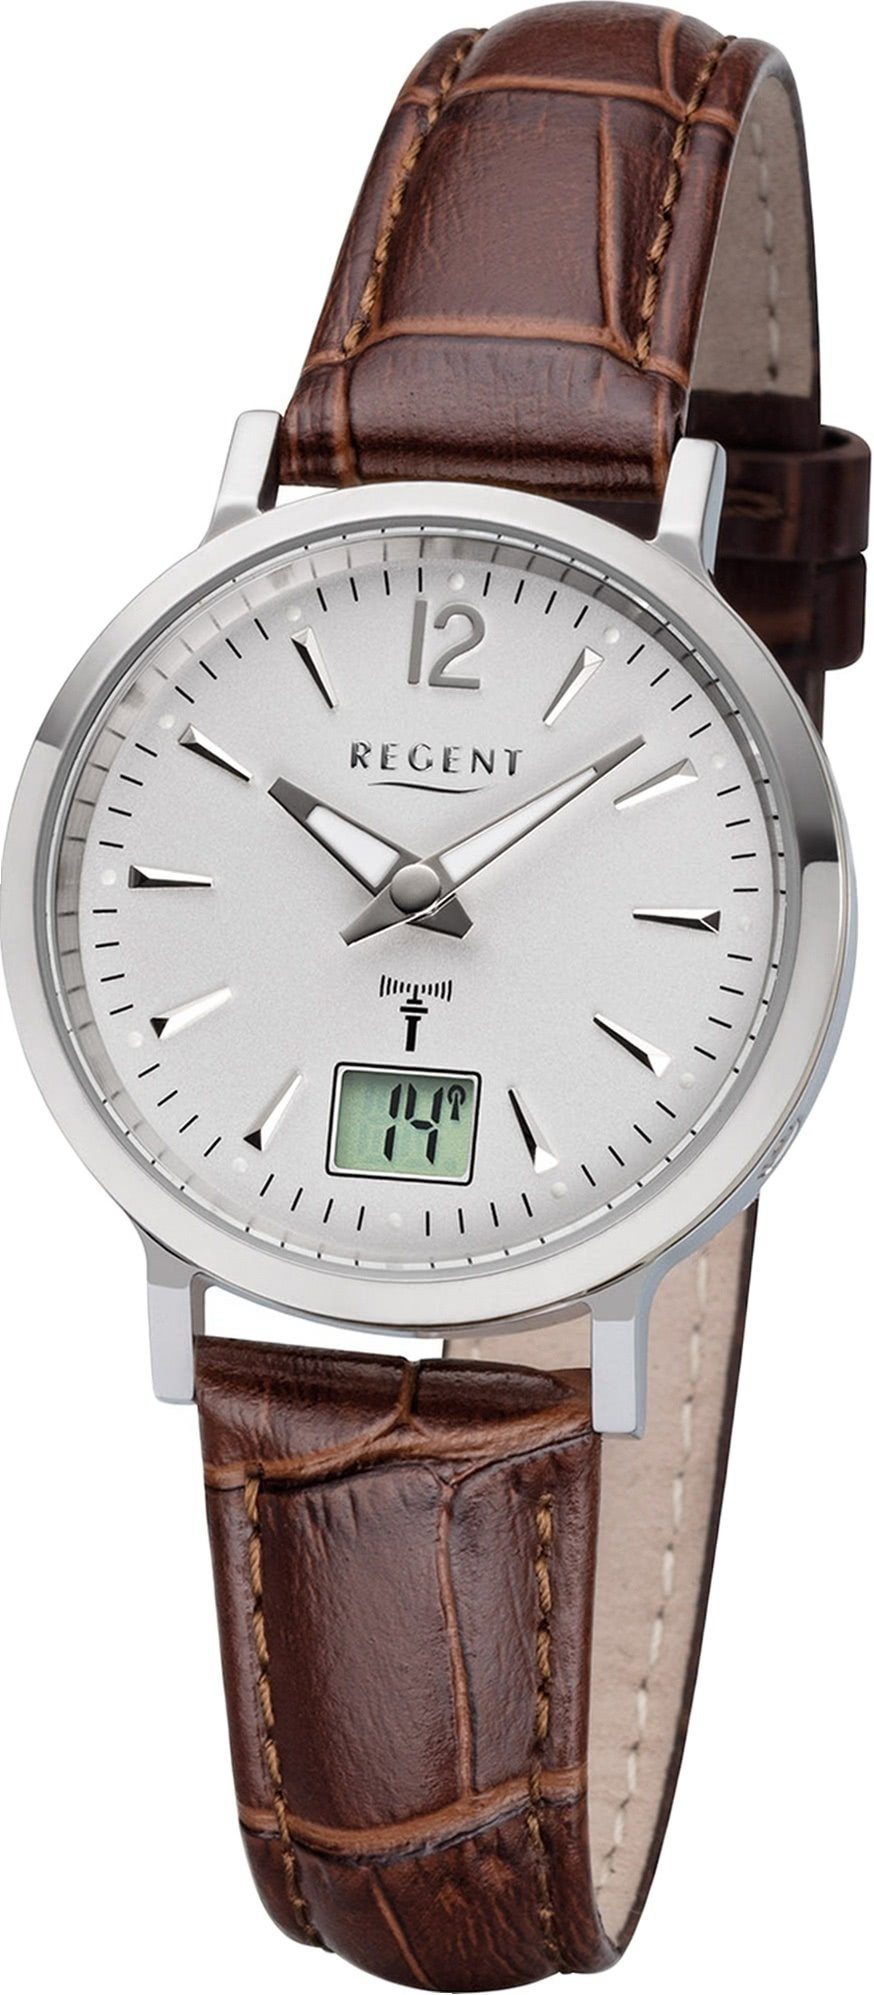 Regent Funkuhr Regent Leder Damen Uhr FR-256, Damenuhr mit Lederarmband,  rundes Gehäuse (ca. 30mm), Elegant-Style